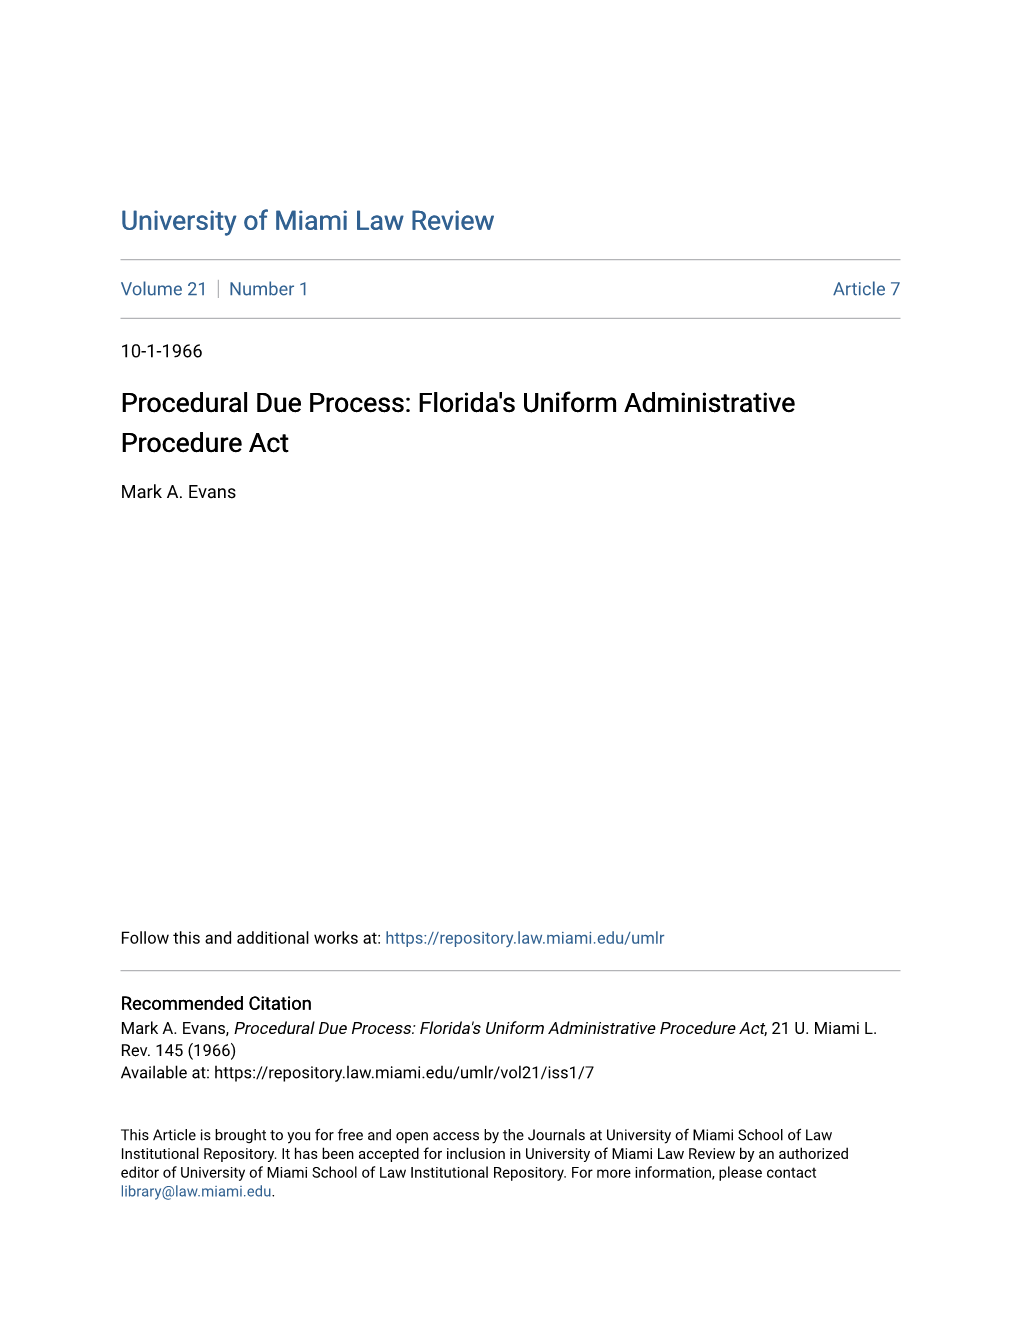 Procedural Due Process: Florida's Uniform Administrative Procedure Act